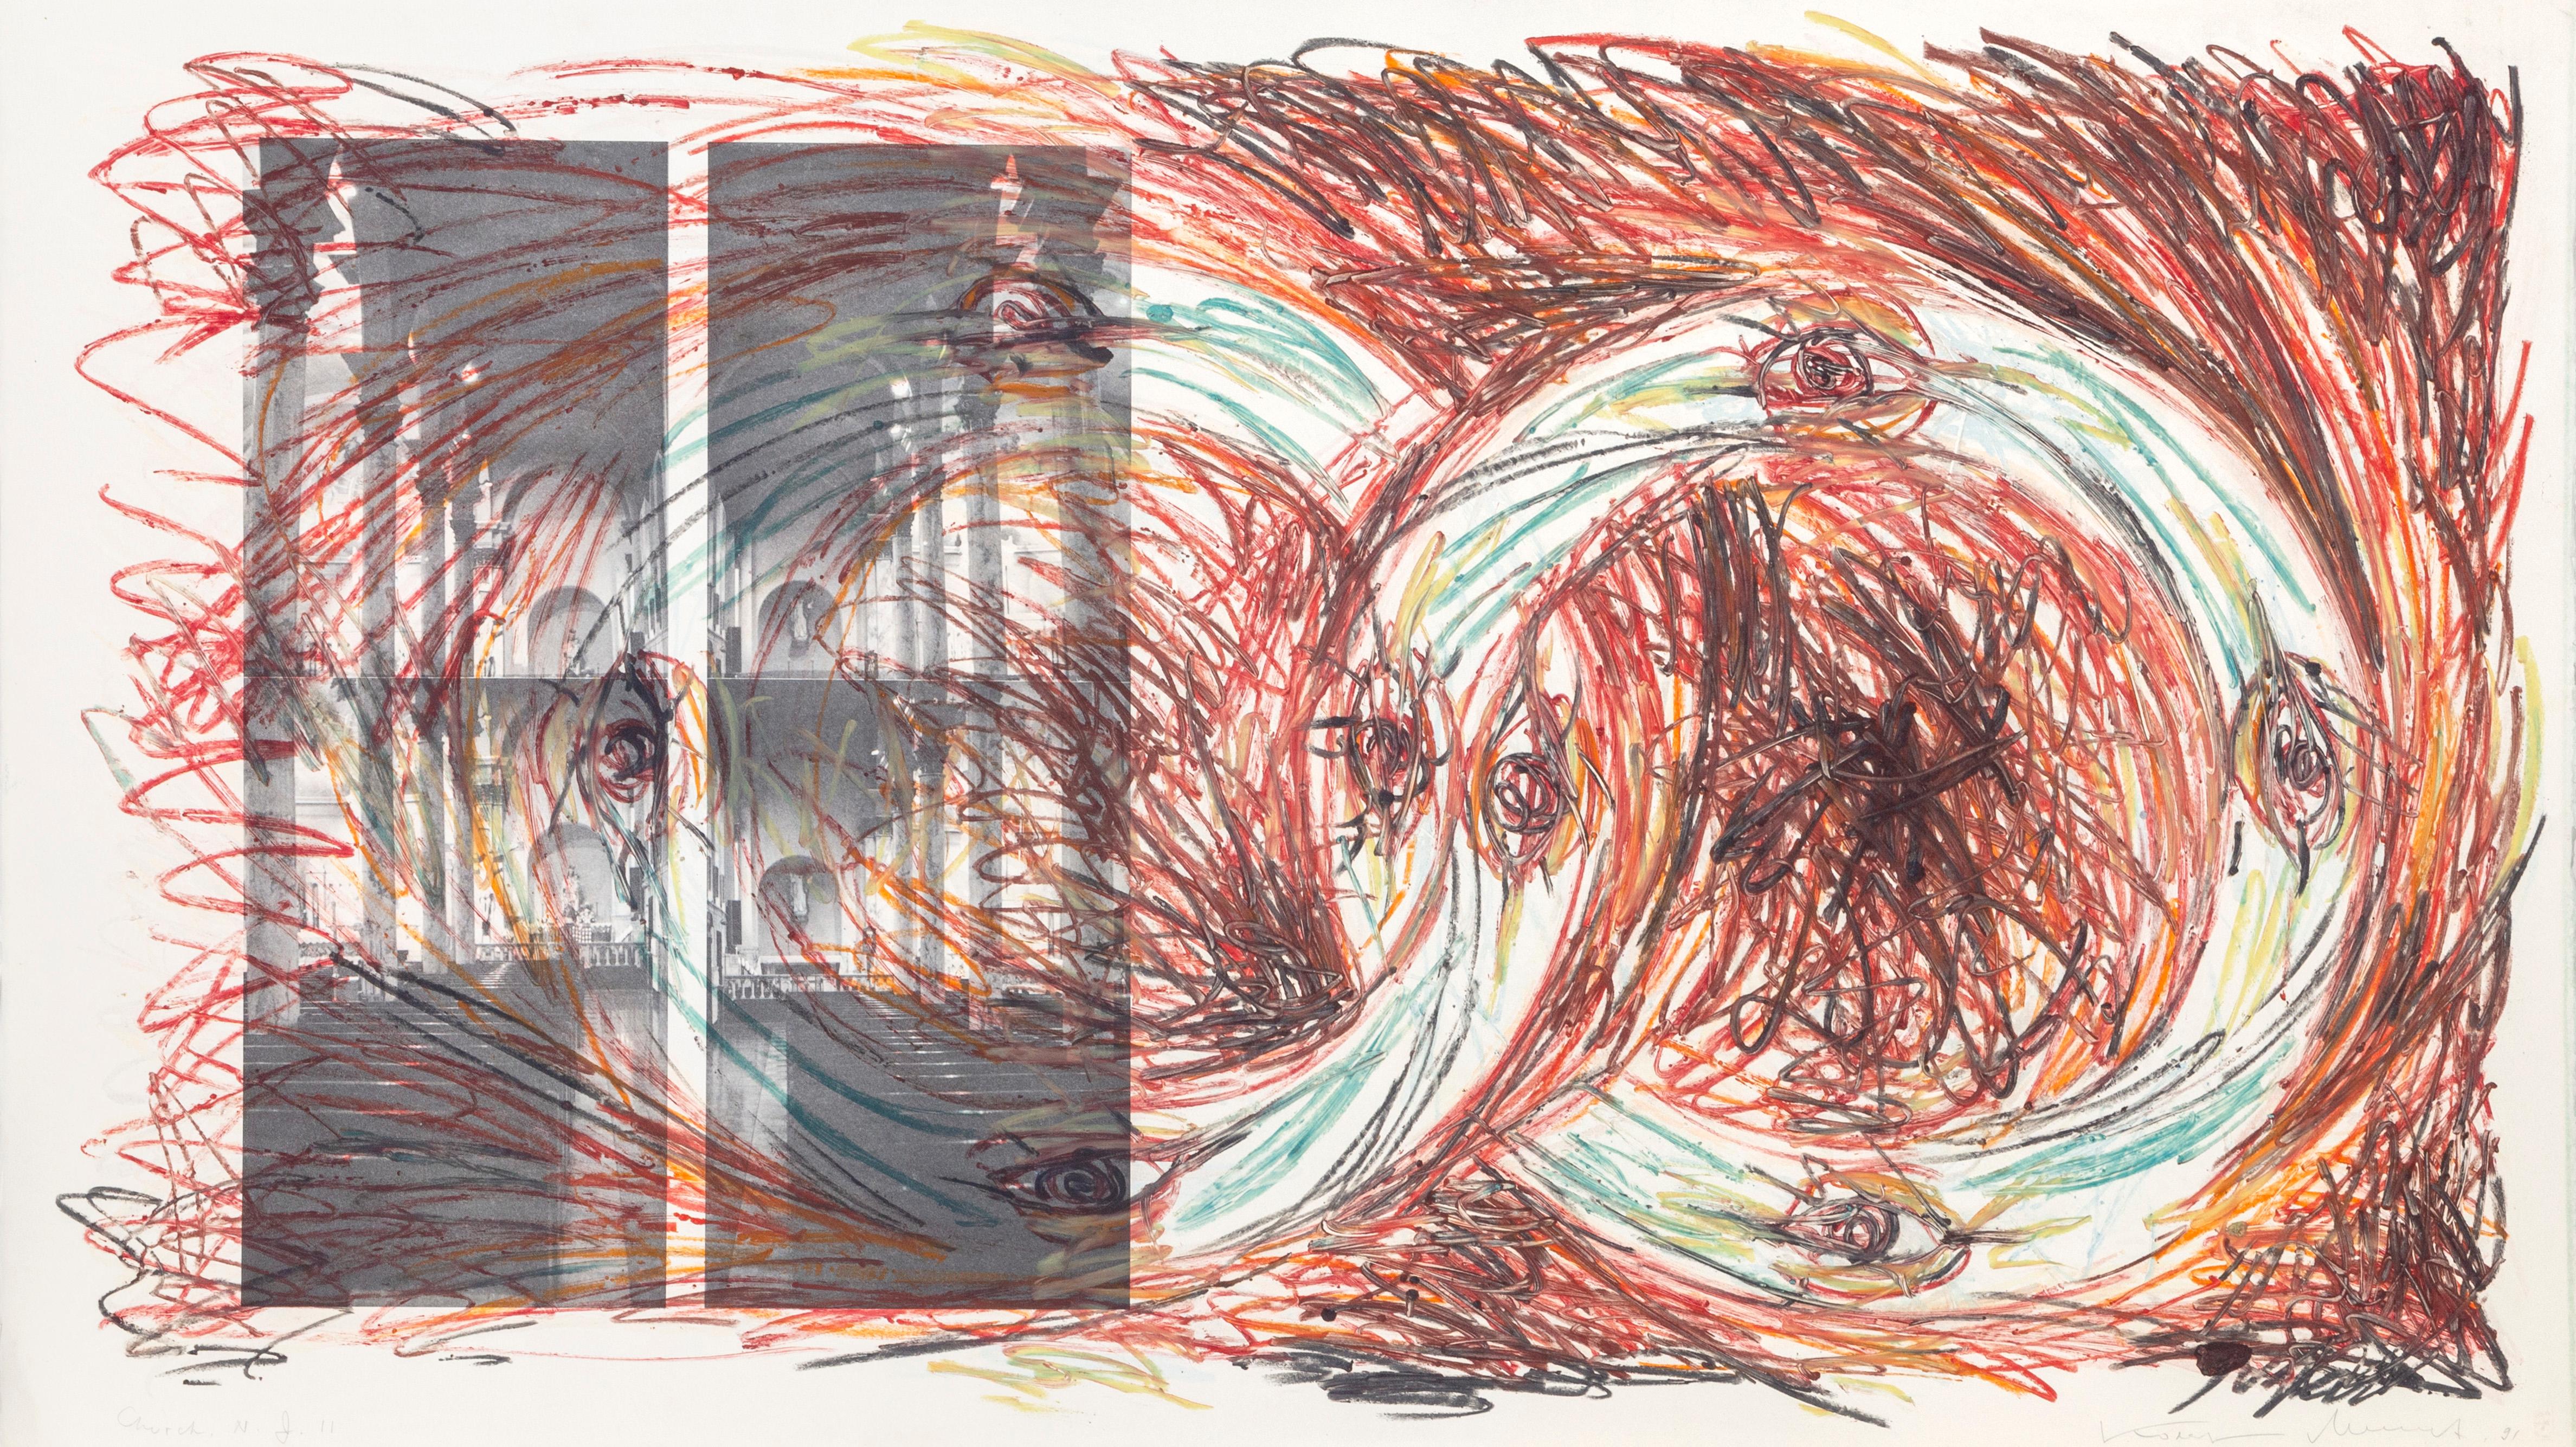 Künstler: Vitali Komar, Russe (1943 - ) und Alexander Melamid, Russe (1945 - )
Titel: Church's, NJ
Jahr: 1991
Medium: Radierung, signiert, nummeriert, datiert und mit Bleistift gekippt 
Papierformat: 30 x 53 Zoll (76,2 x 134,62 cm)